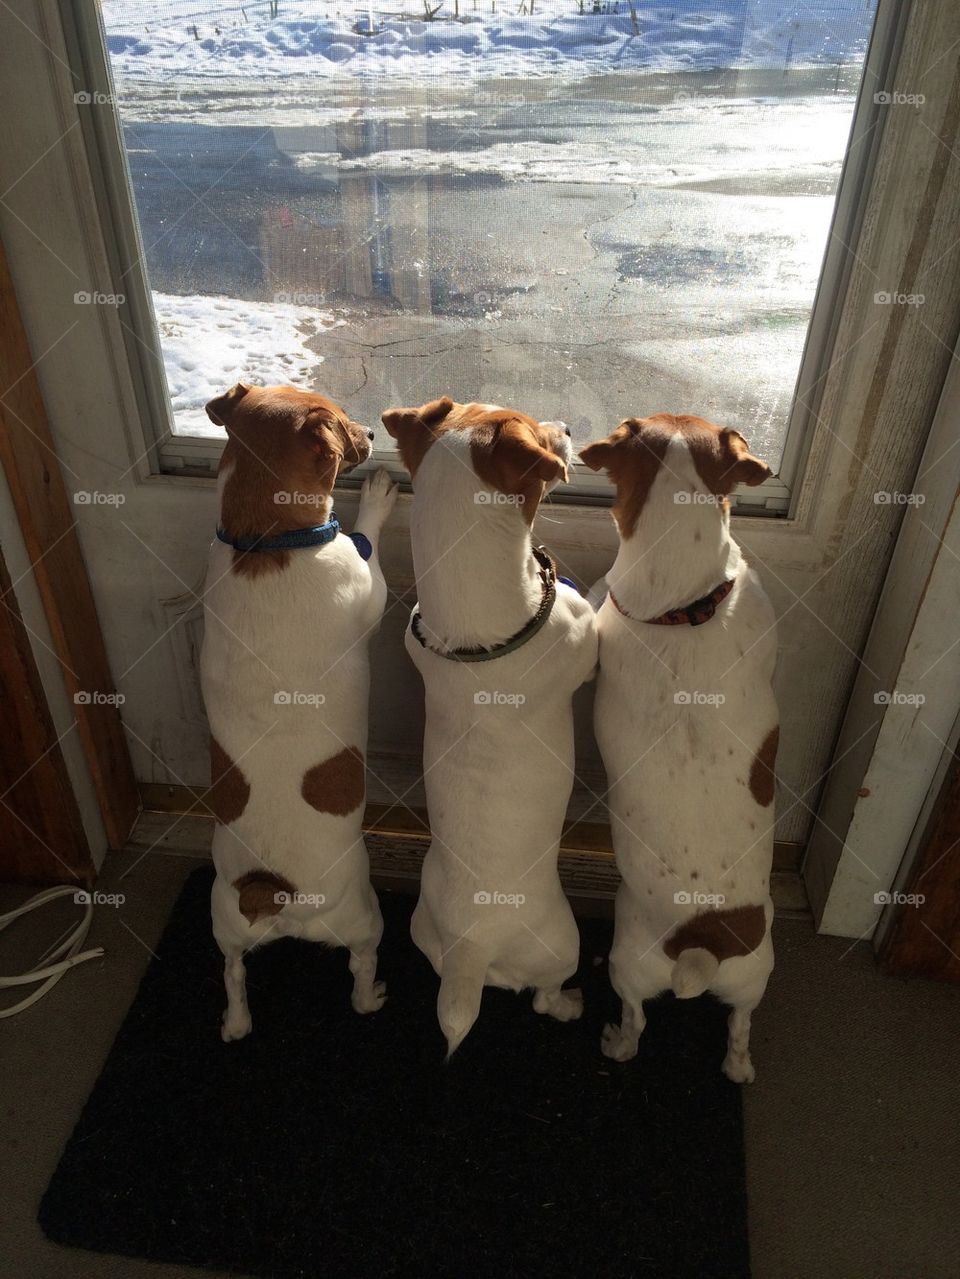 Dogs seen through glass door